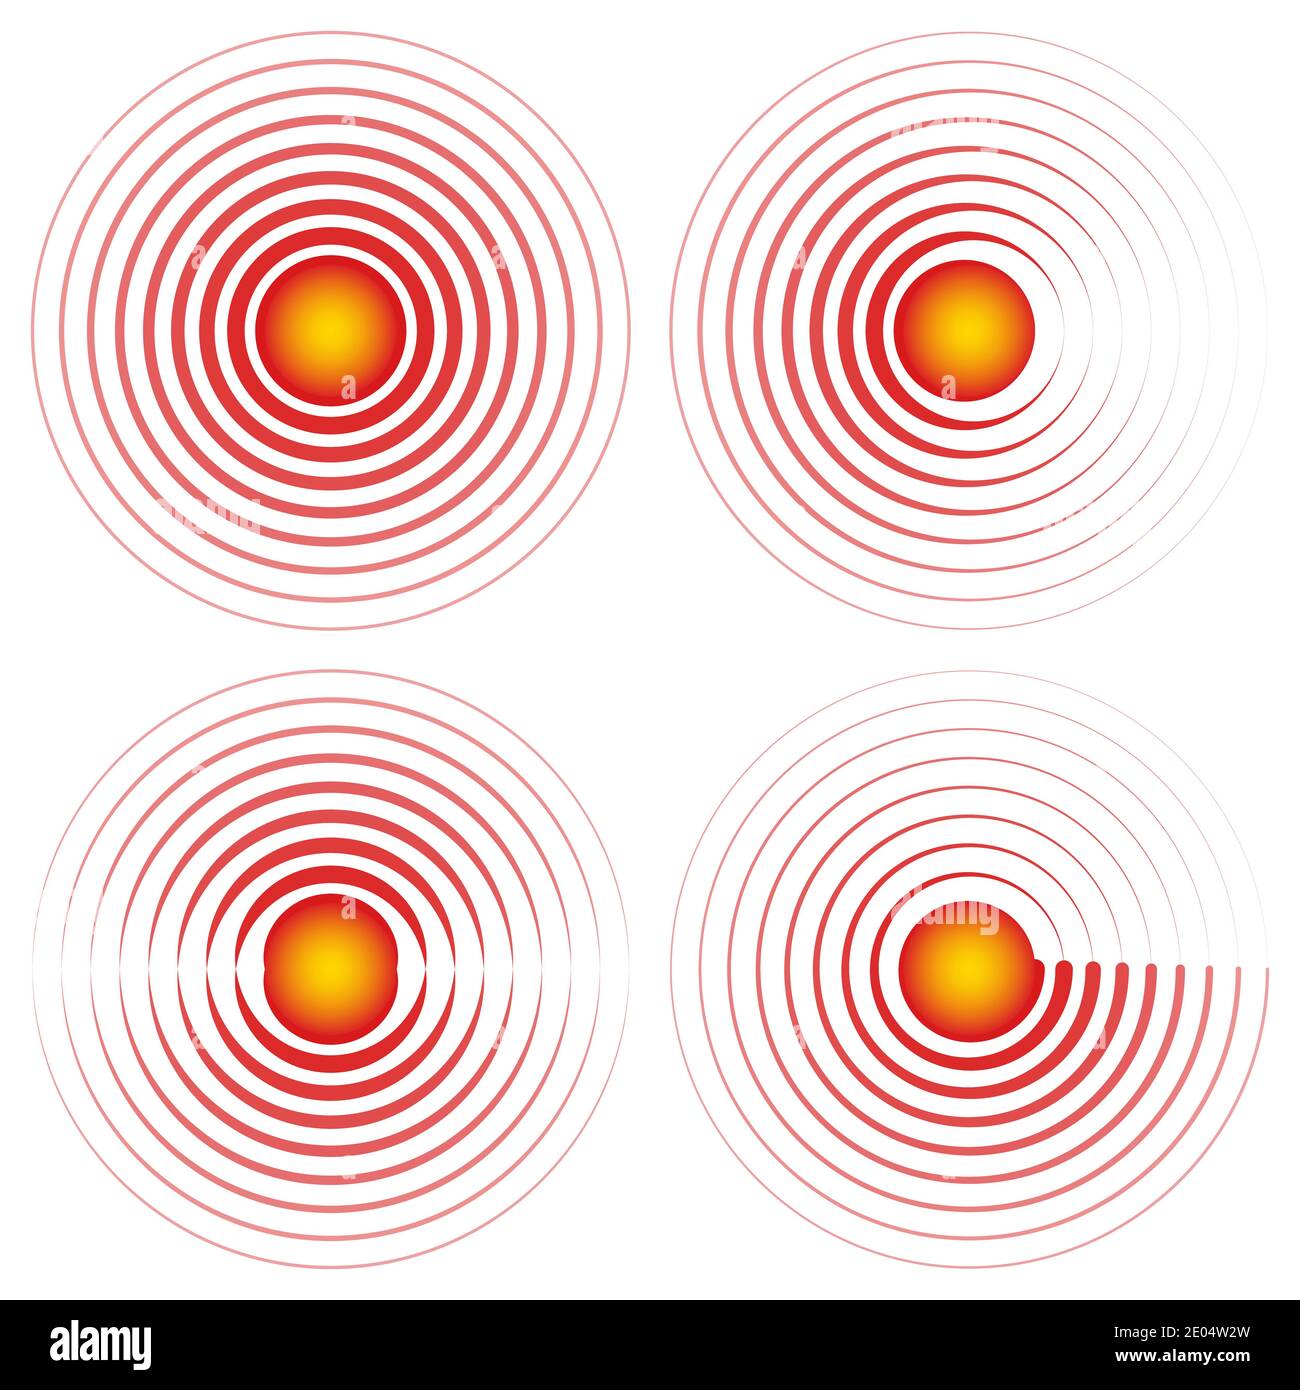 Zeichen Symbol Epizentrum Schmerzen Lokalisierungsvektor rote Kreise mit gelben Zentrum Symbol Halsschmerzen Gelenke, Wunde Stelle oder gequetscht Körperteil Marke Stock Vektor